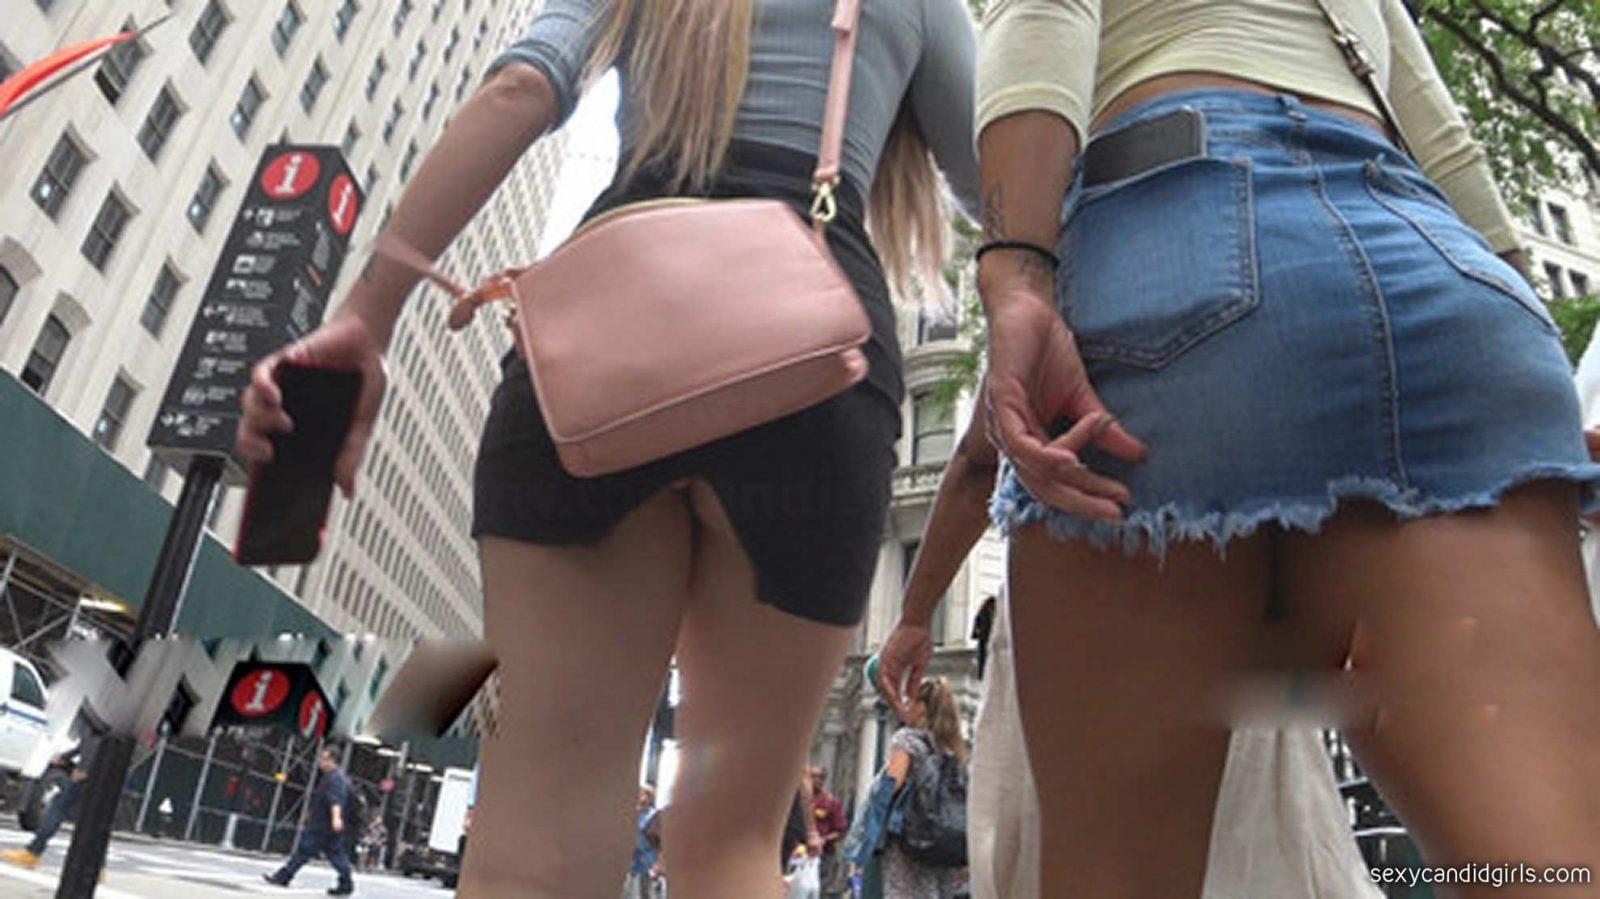 1600px x 899px - Miniskirt Upskirt Pictures 3 â€“ Sexy Candid Girls